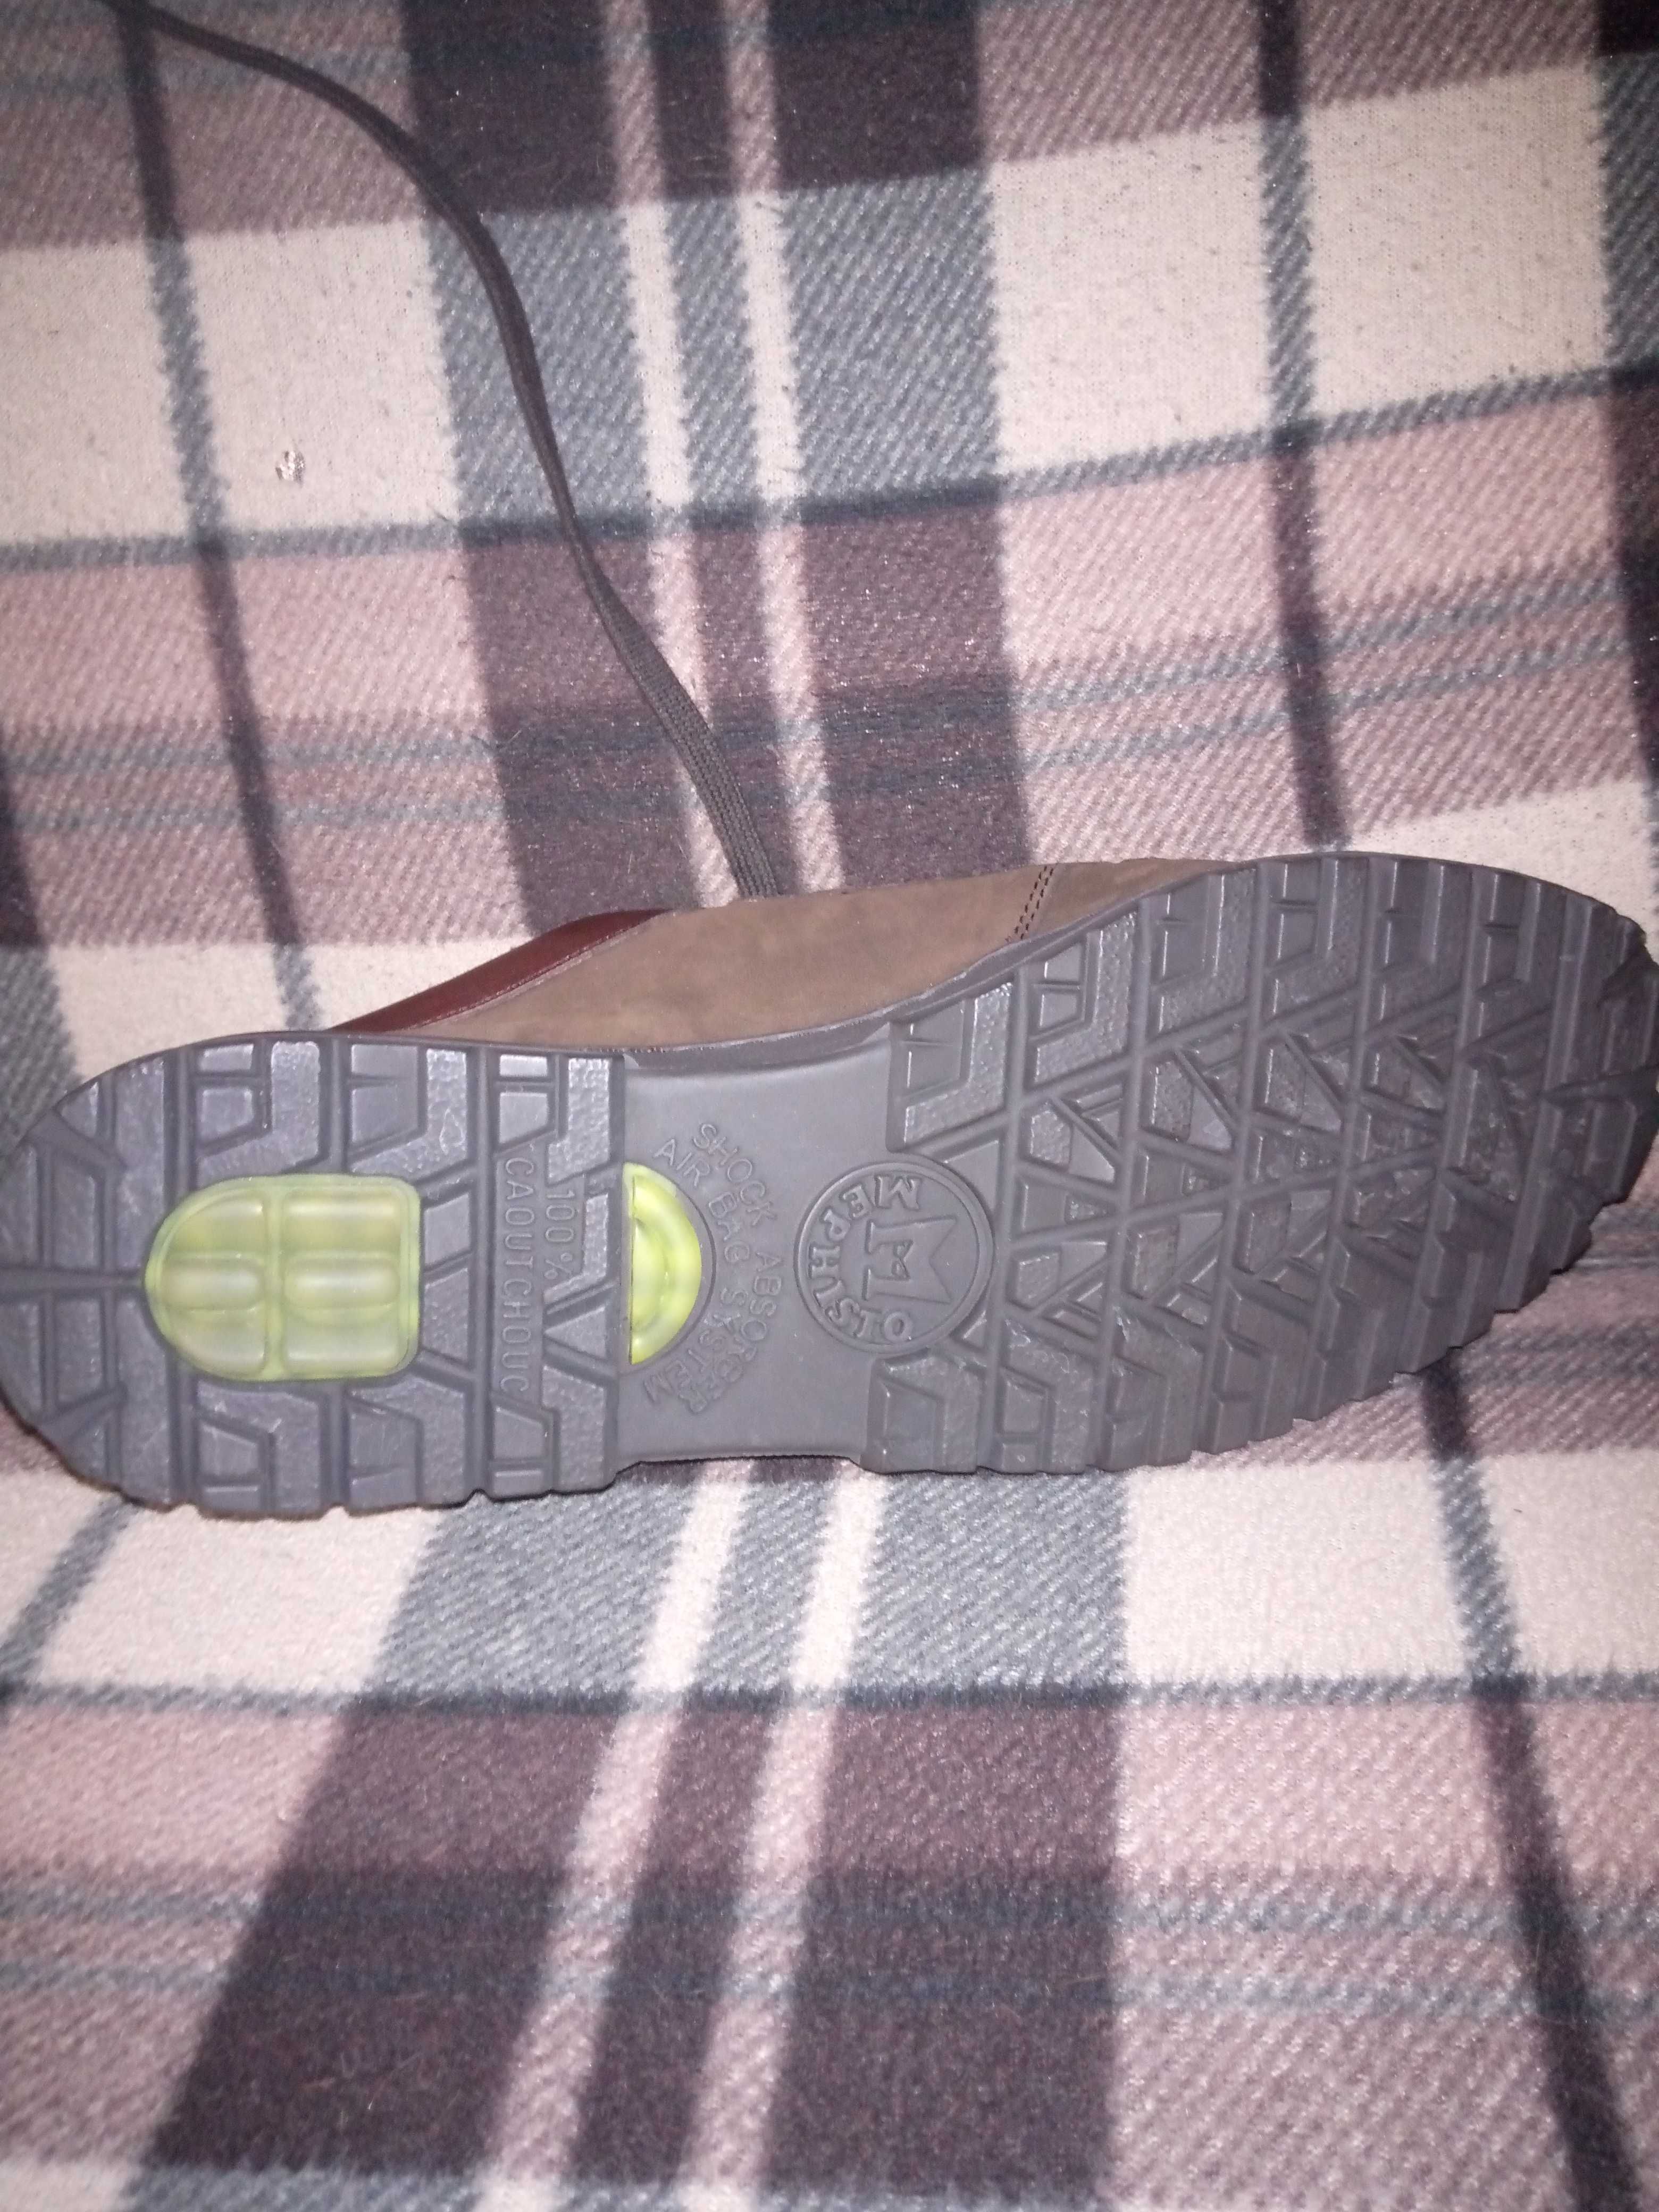 Продам туфли mephisto Німеччина нові.Розмір стелька 25,5 см.Чоловічі.